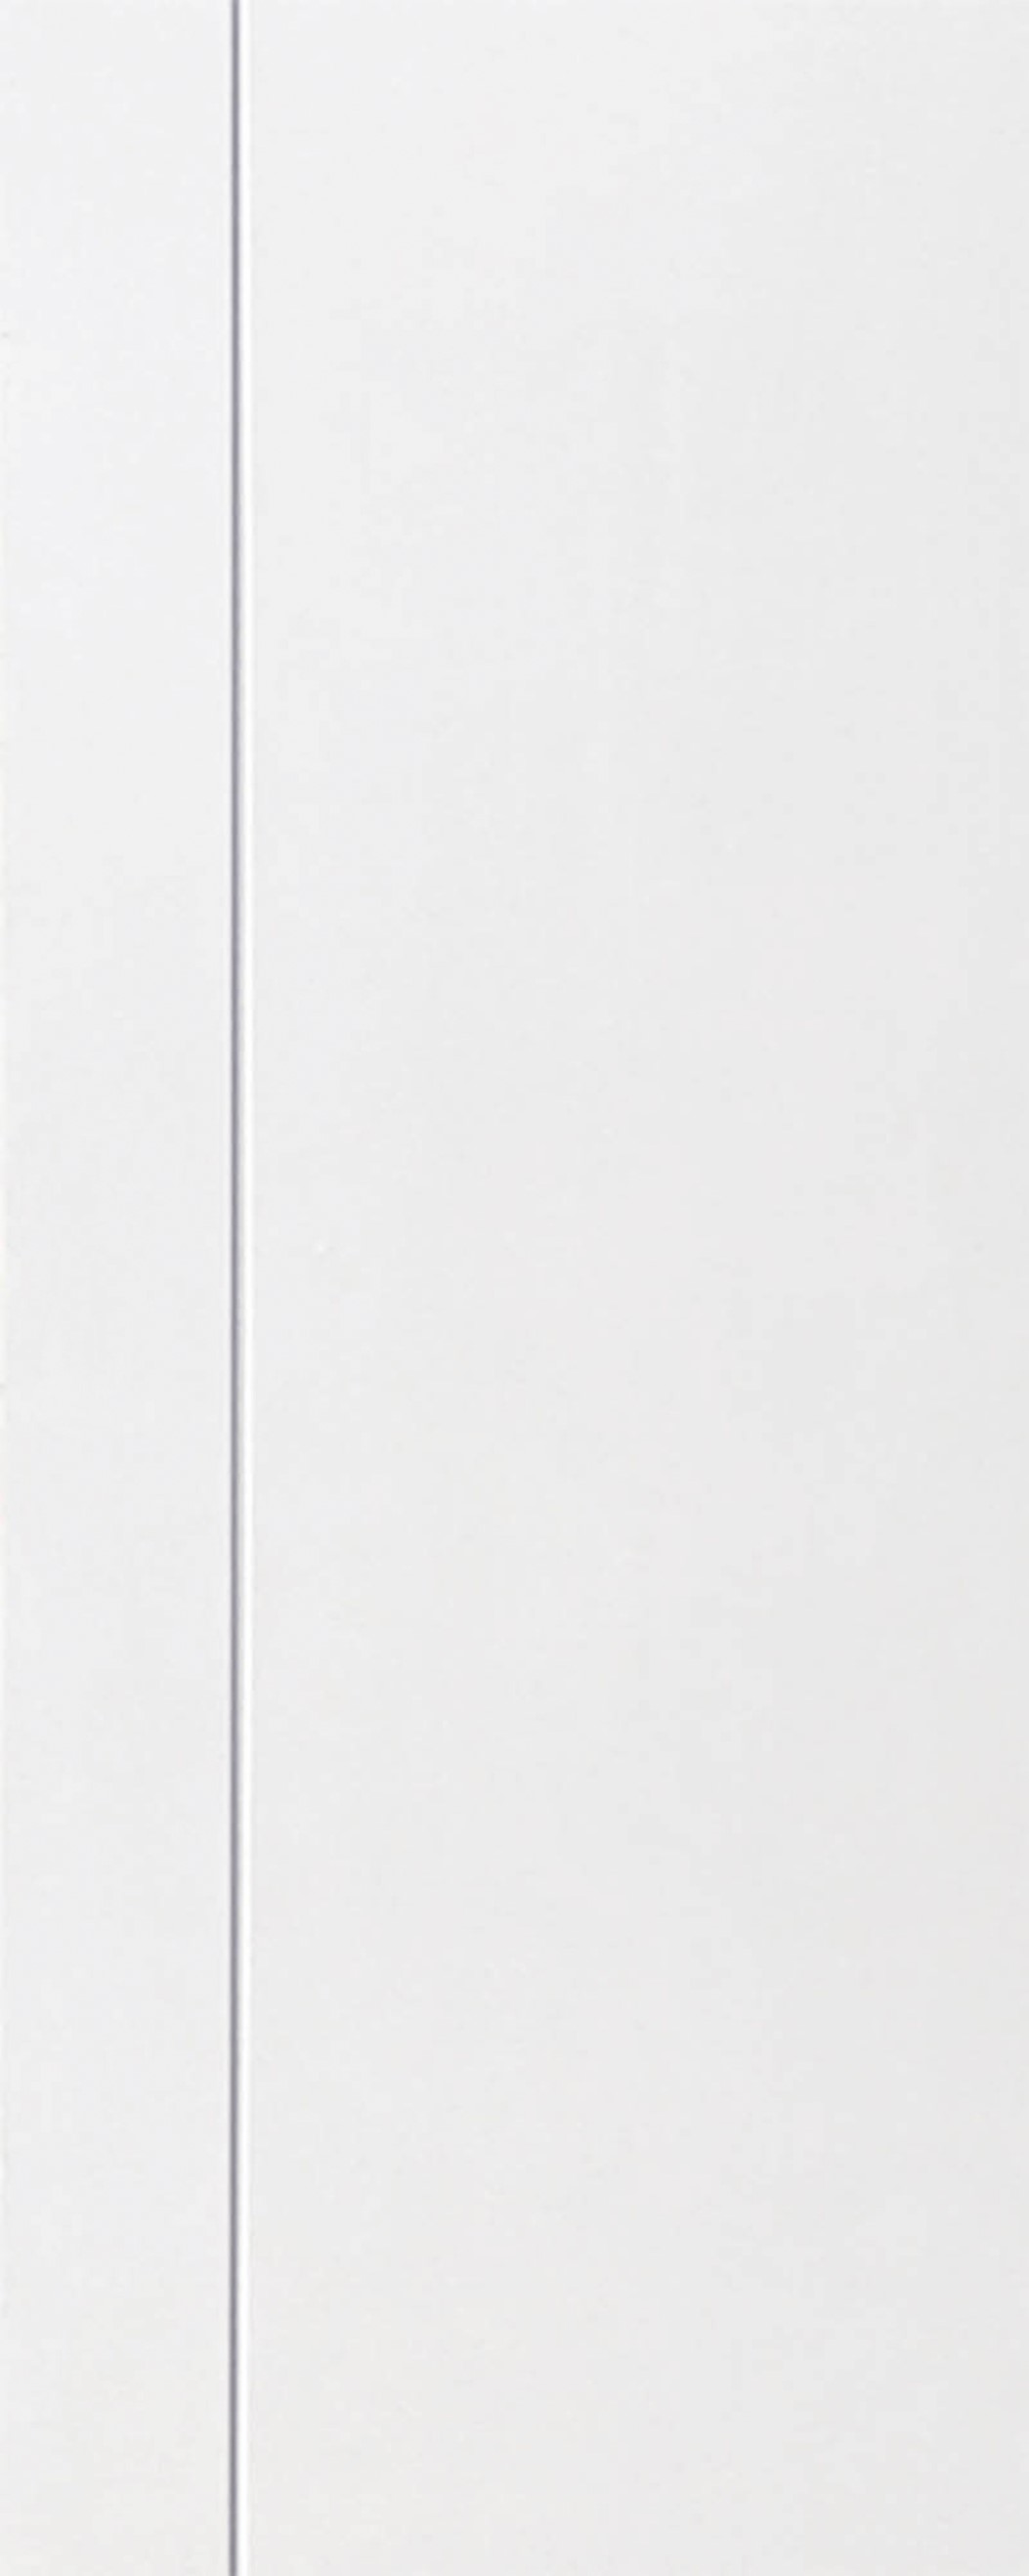 ประตูUPVC ผิวหน้าลายไม้ สีขาว เซาะร่องสำเร็จรูป 1 เส้นตรง